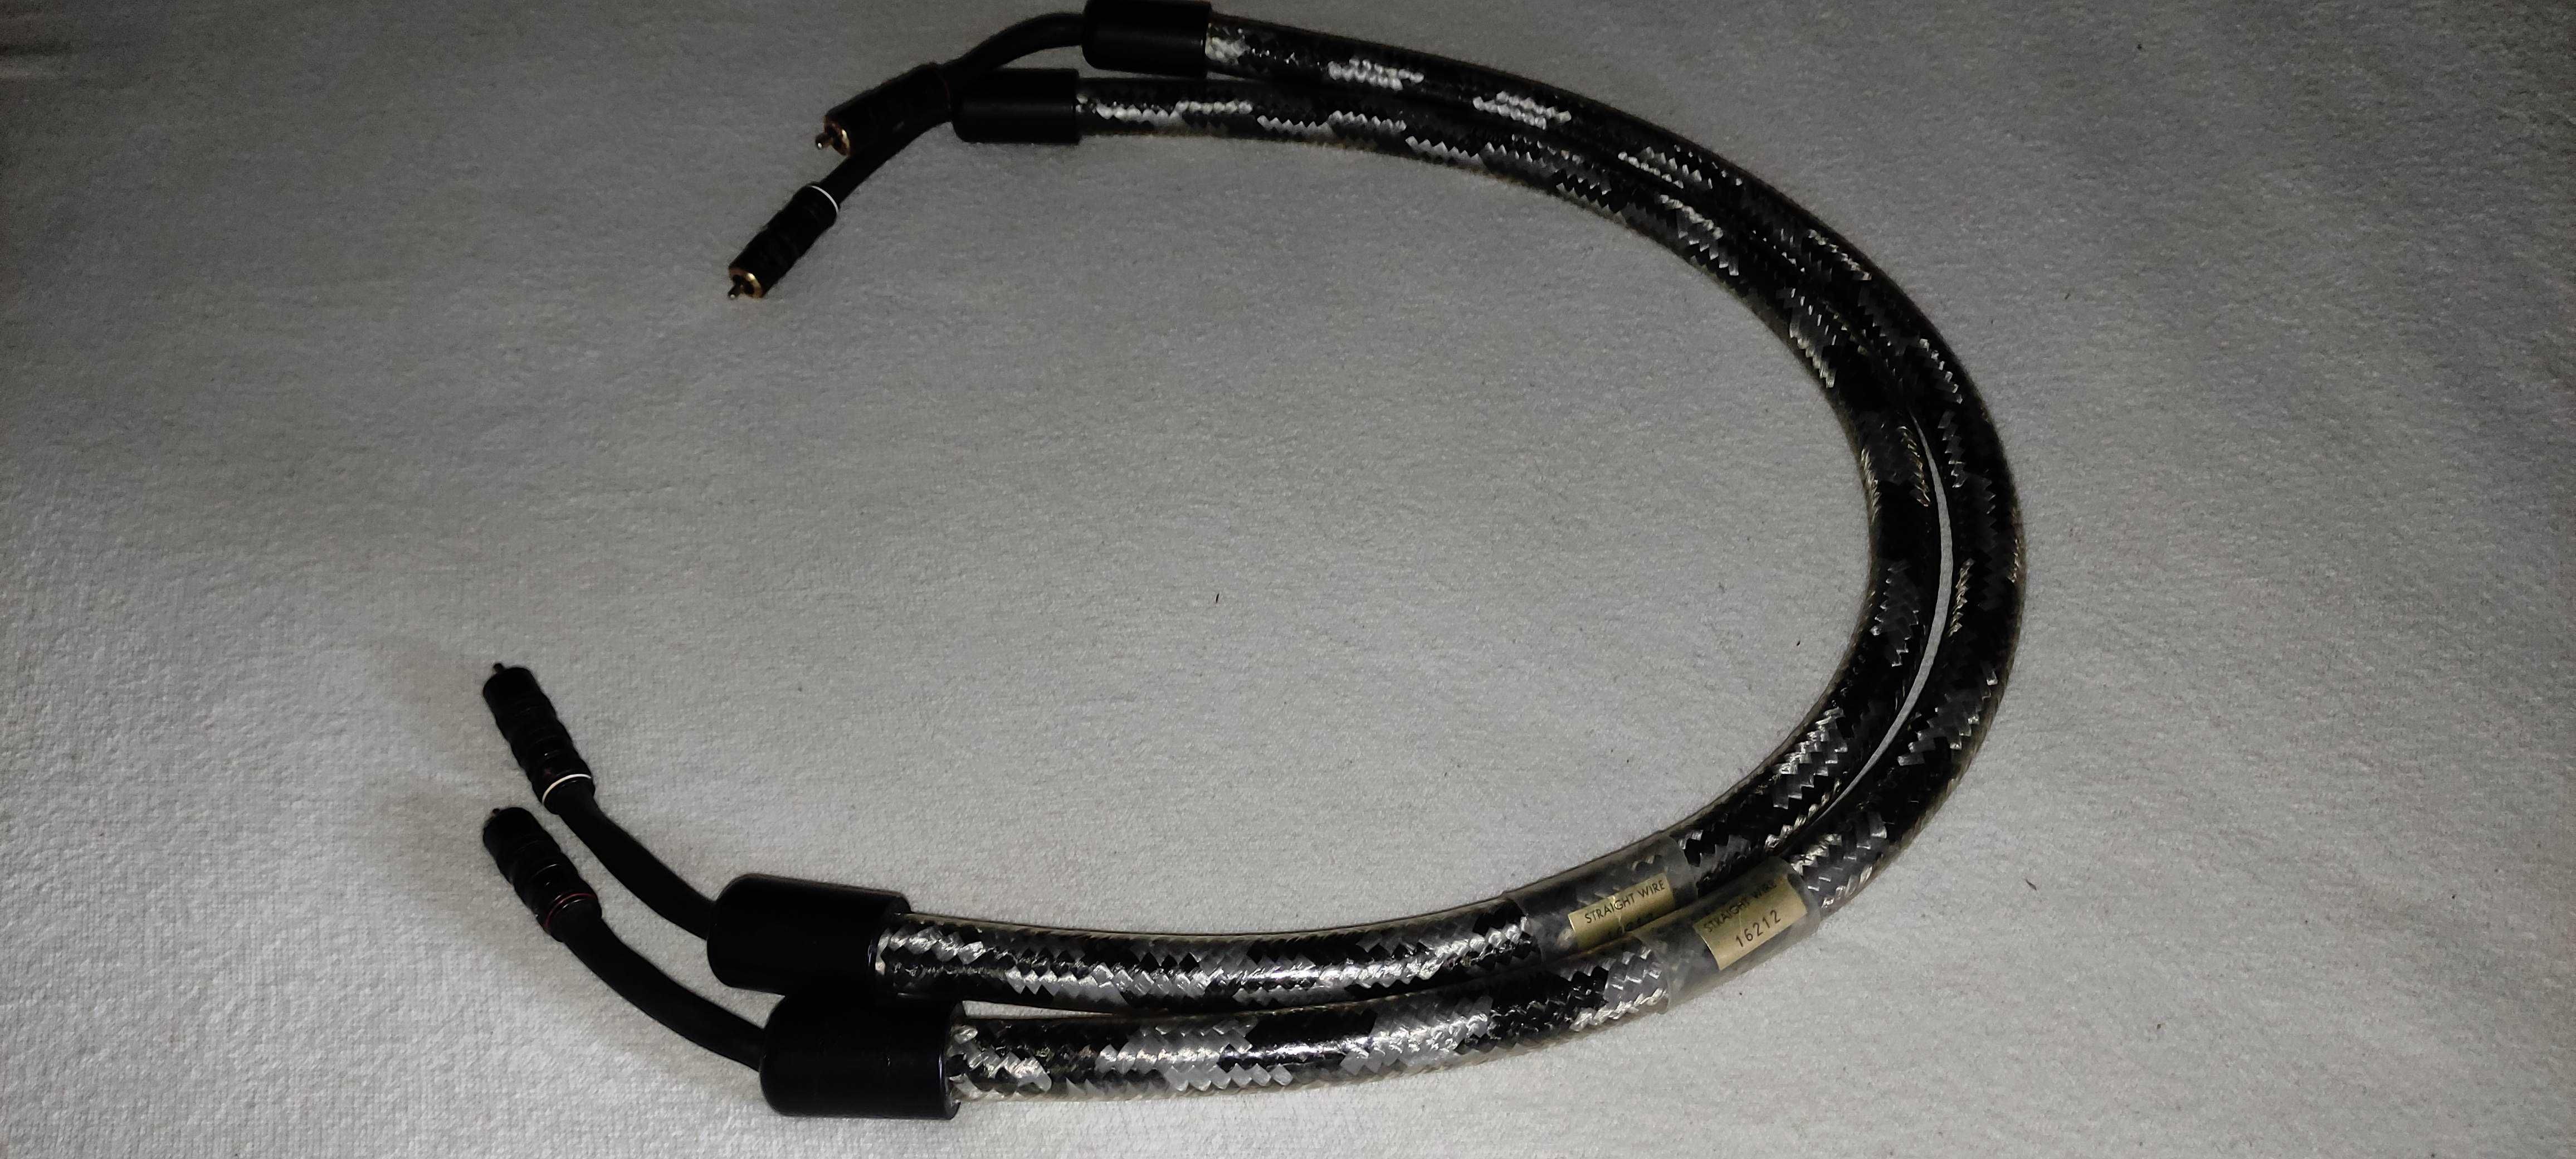 Straight Wire Crescendo - Atlas Ascent 3.5 MKII - Black Cat кабели